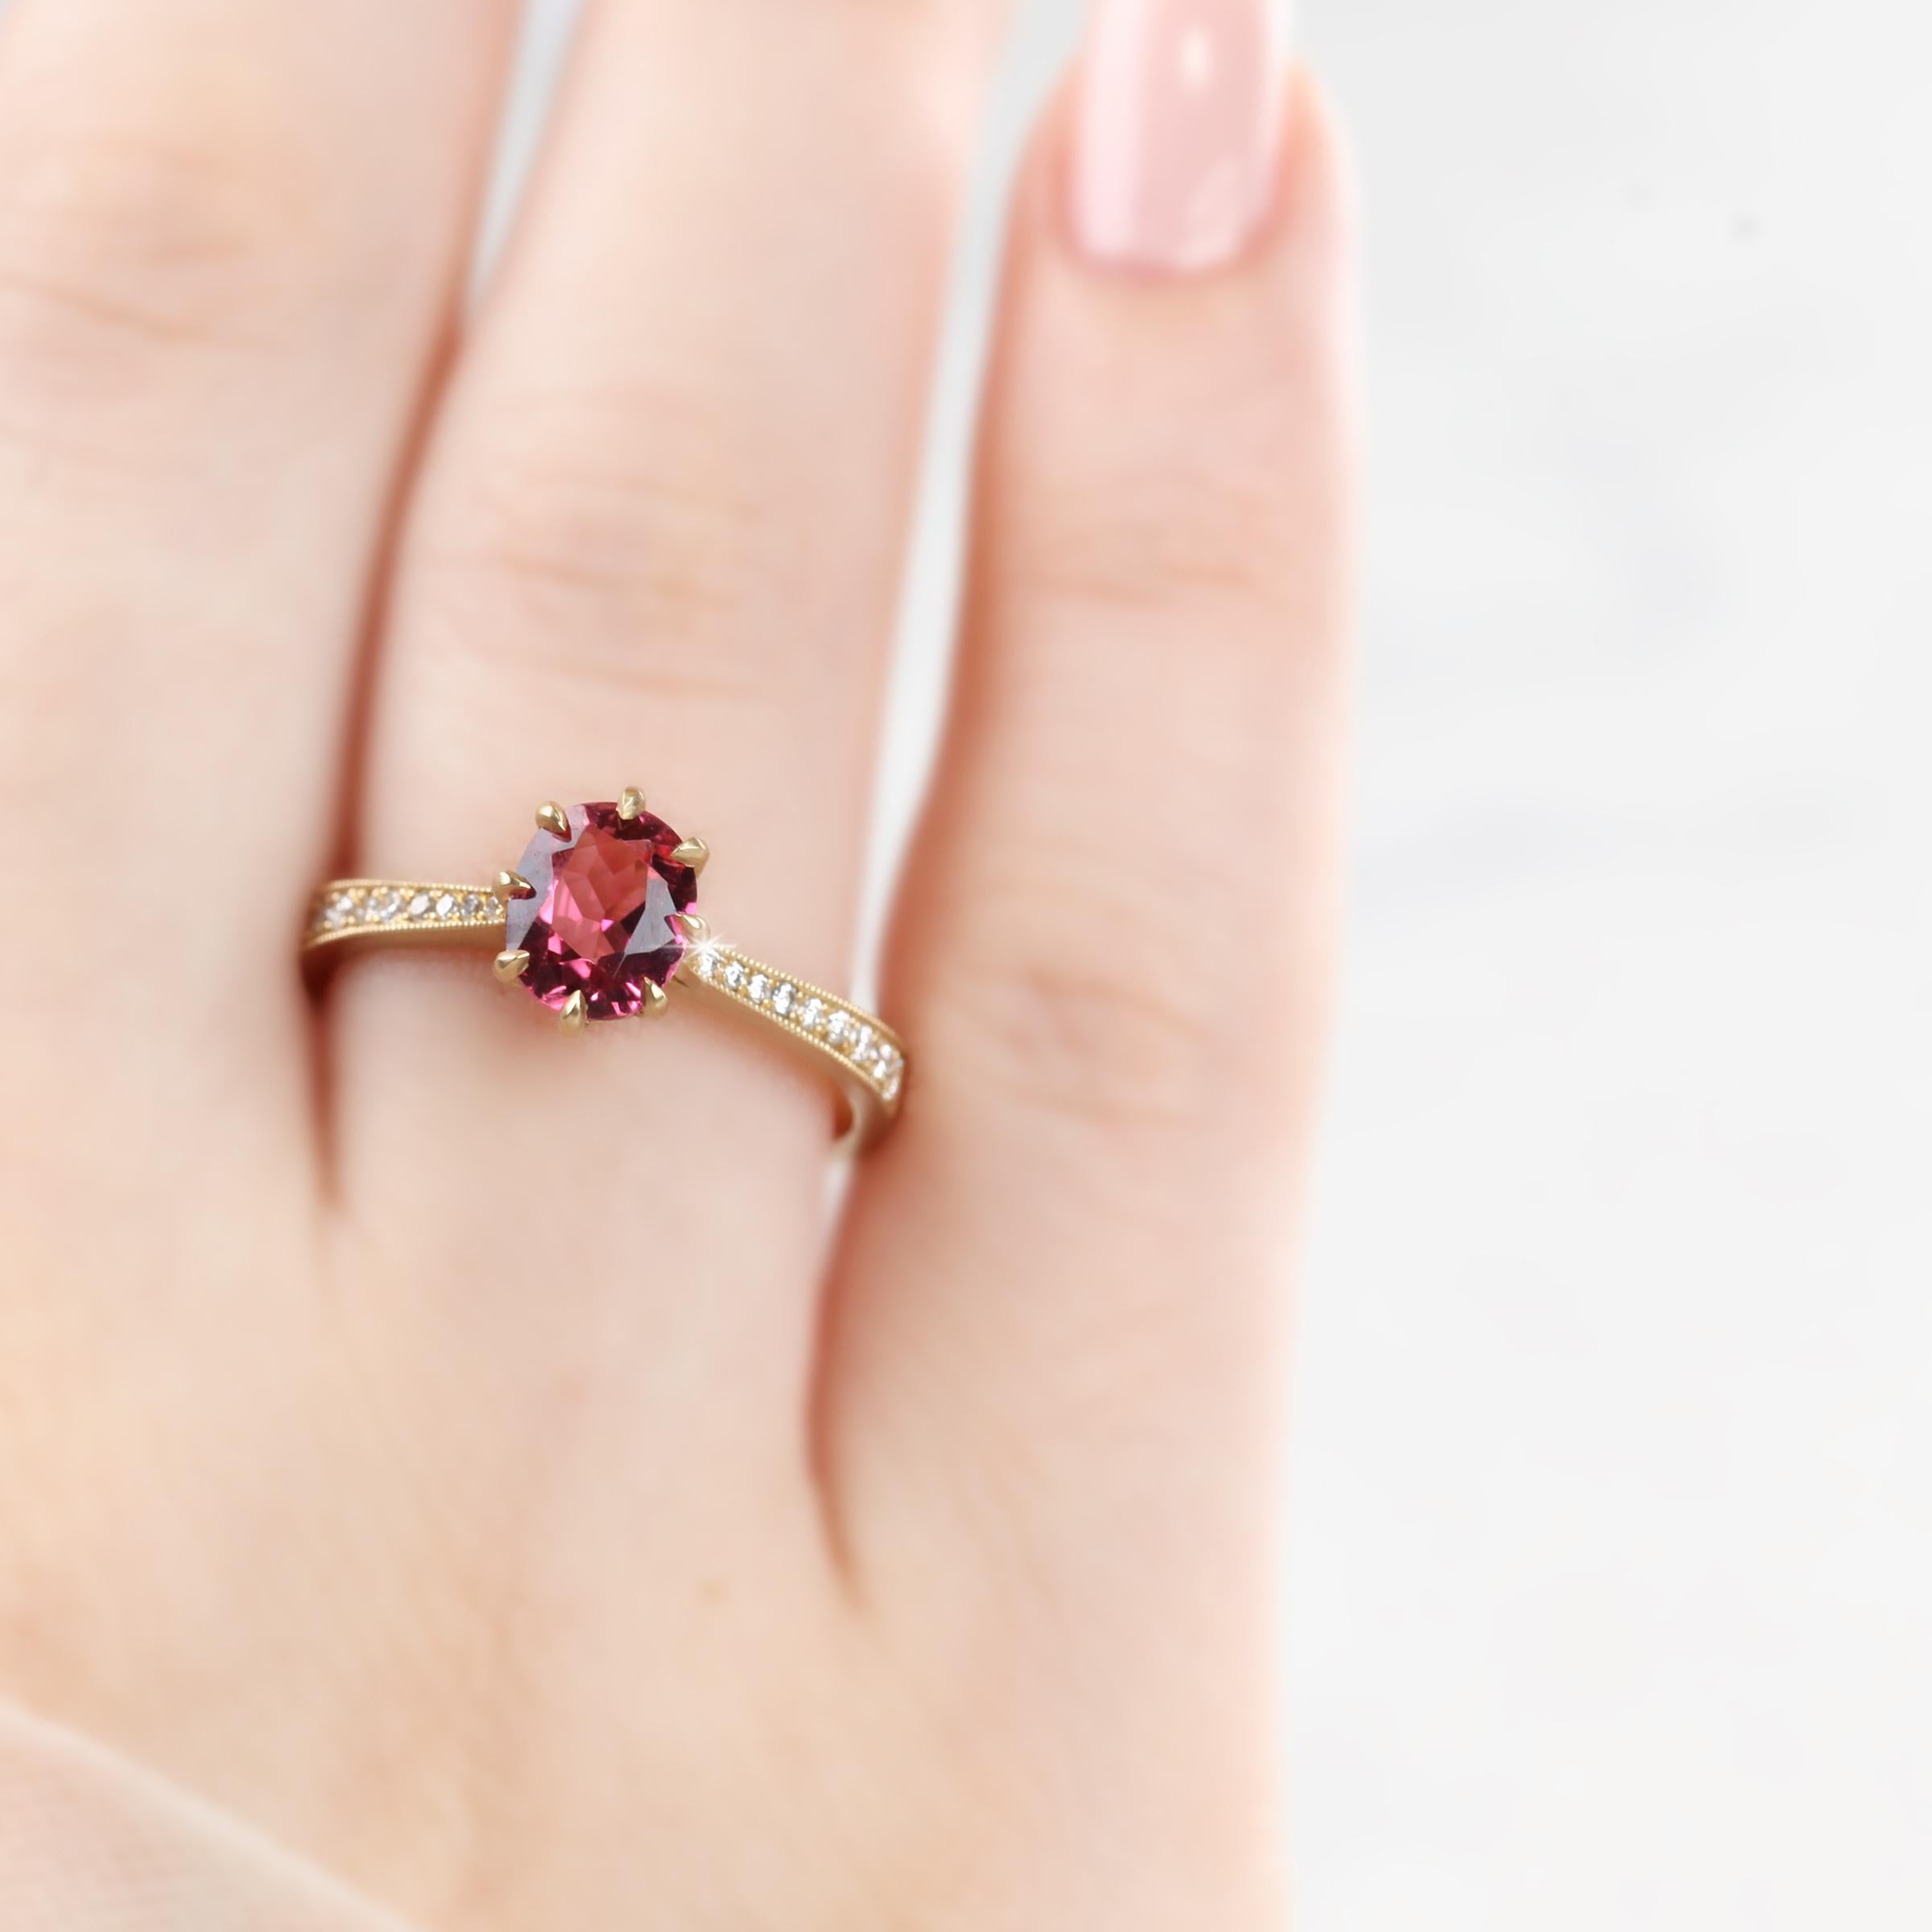 Vintage-Stil Turmalin und Diamant-Ring mit 14K Mate Gelbgold von Händen aus Ring, um den Stein Formen erstellt. Gute Ideen für einen Statement-Ring oder einen stapelbaren Ring als Geschenk für sie. Es ist ein Design-Schmuckstück.

Für die Liebhaber